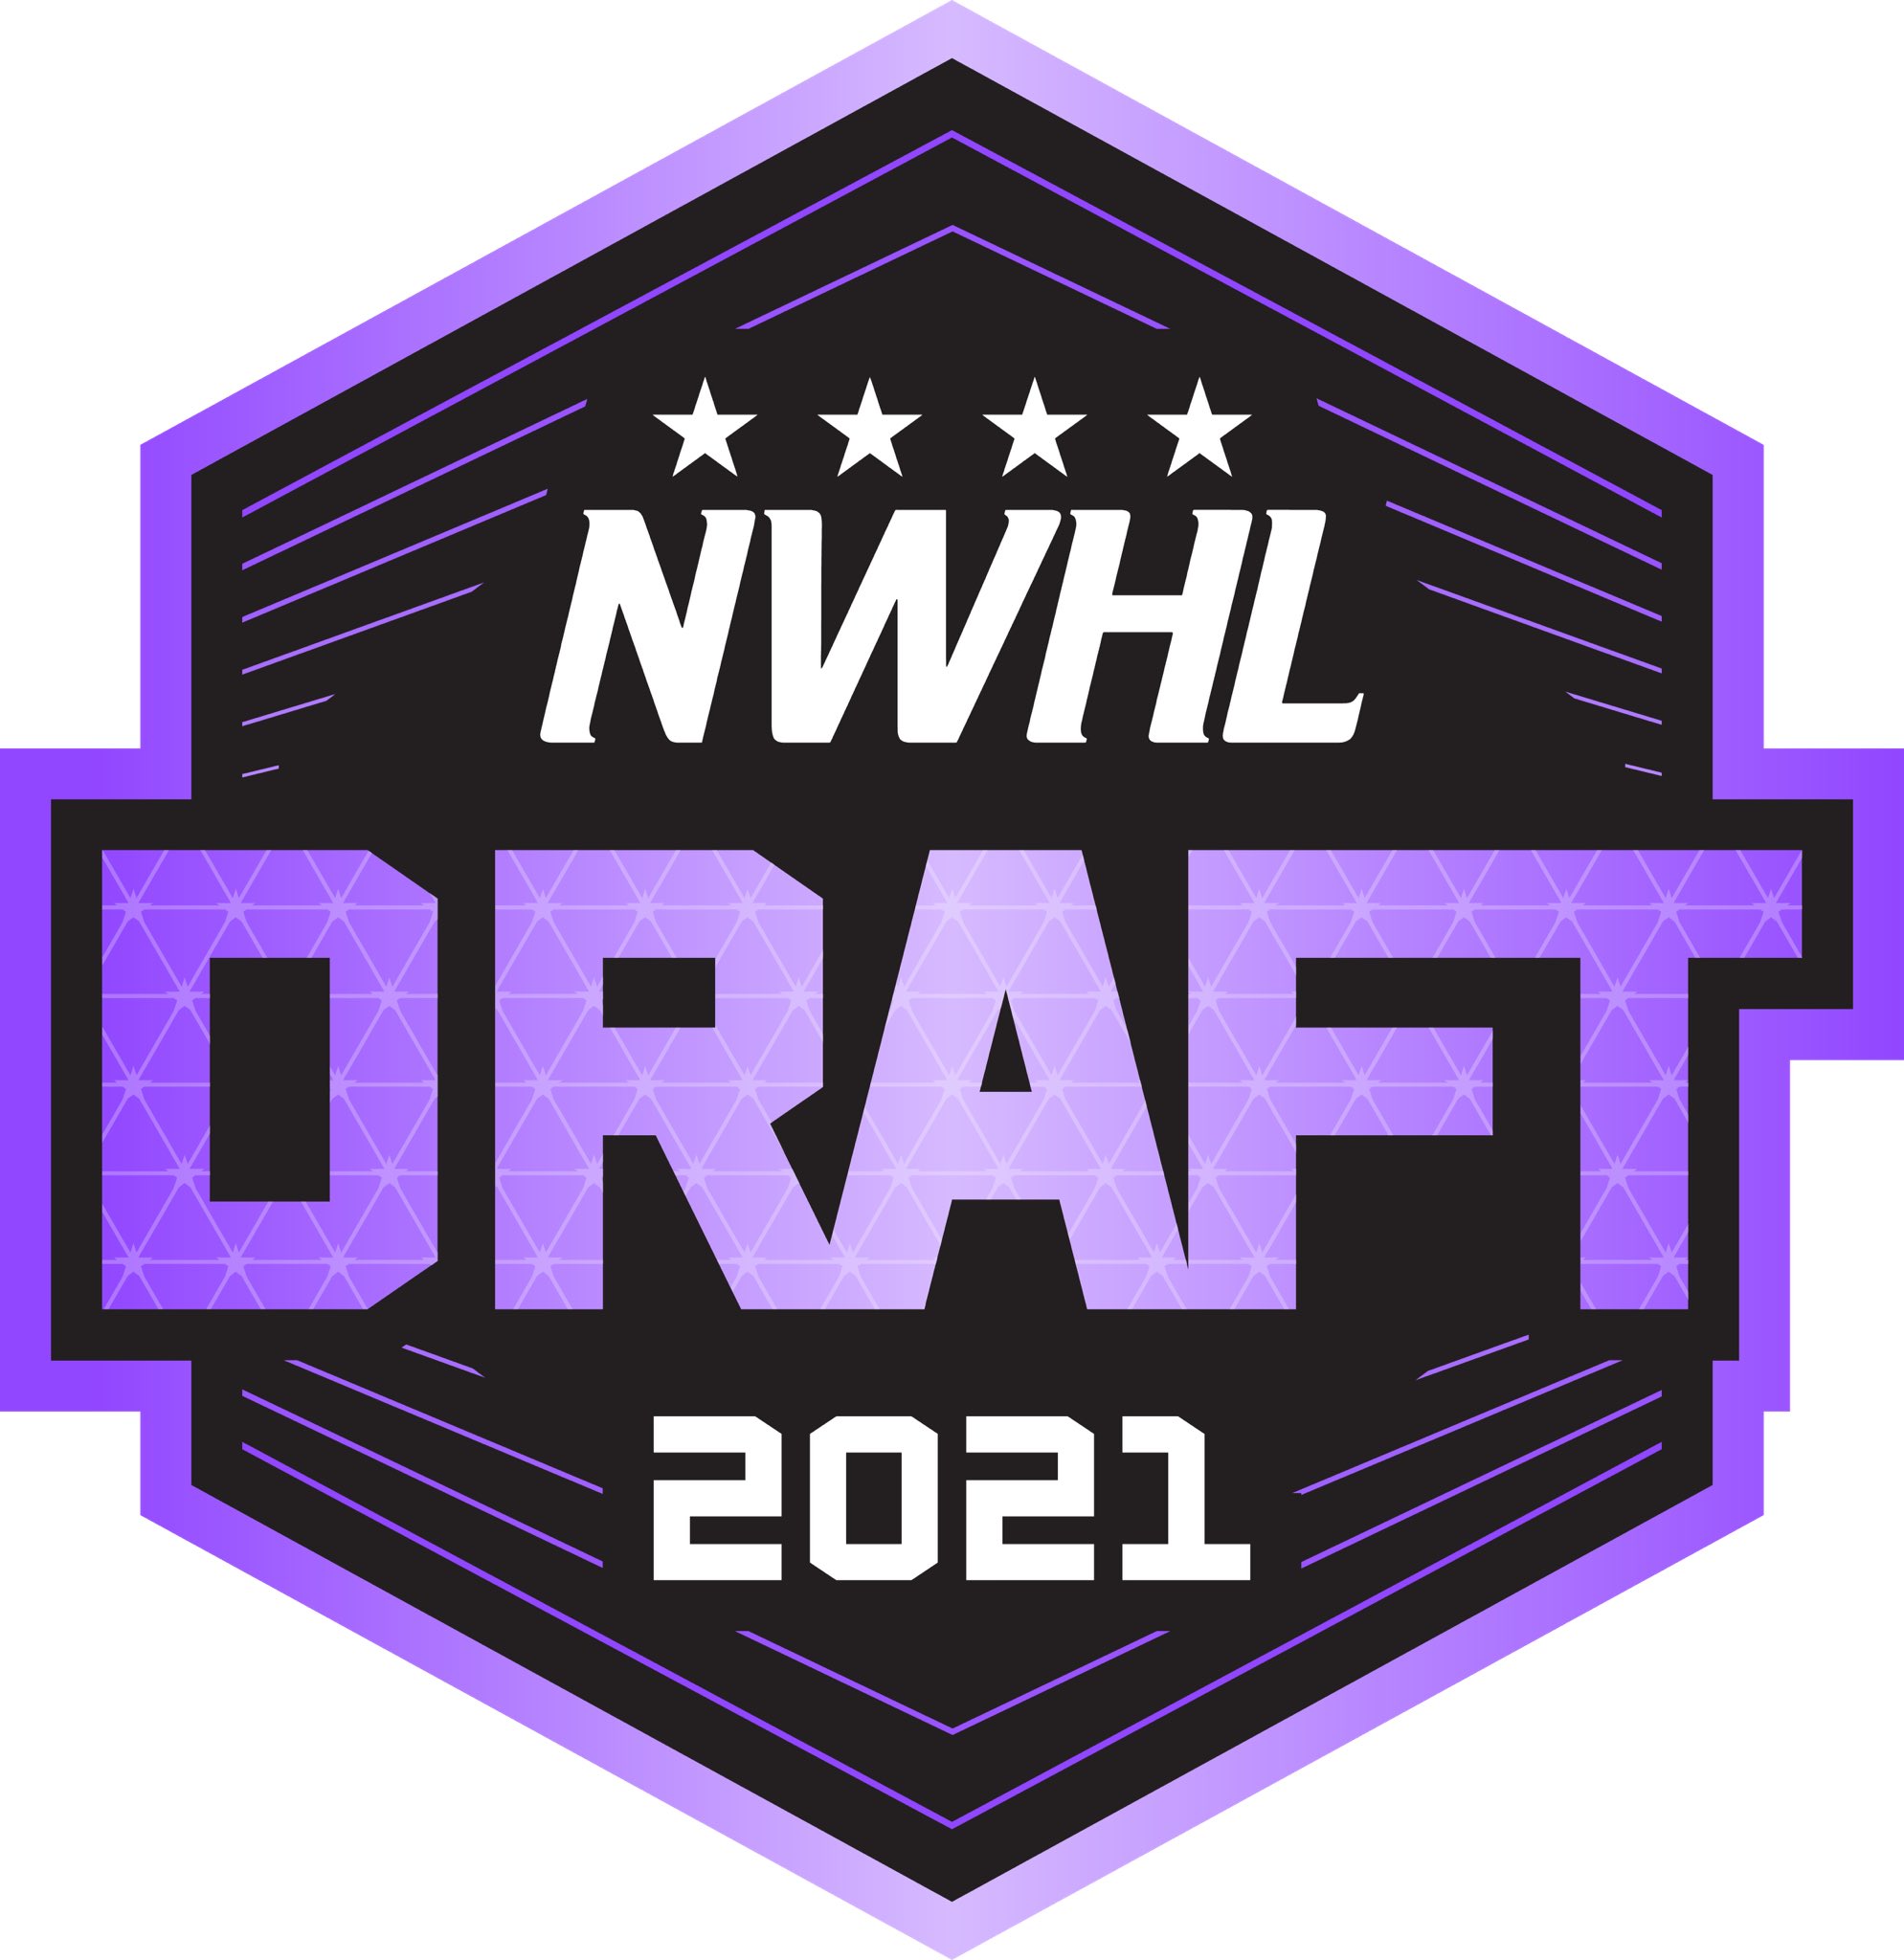 Draft da NWHL ocorrerá em 29 de junho ao vivo na Twitch